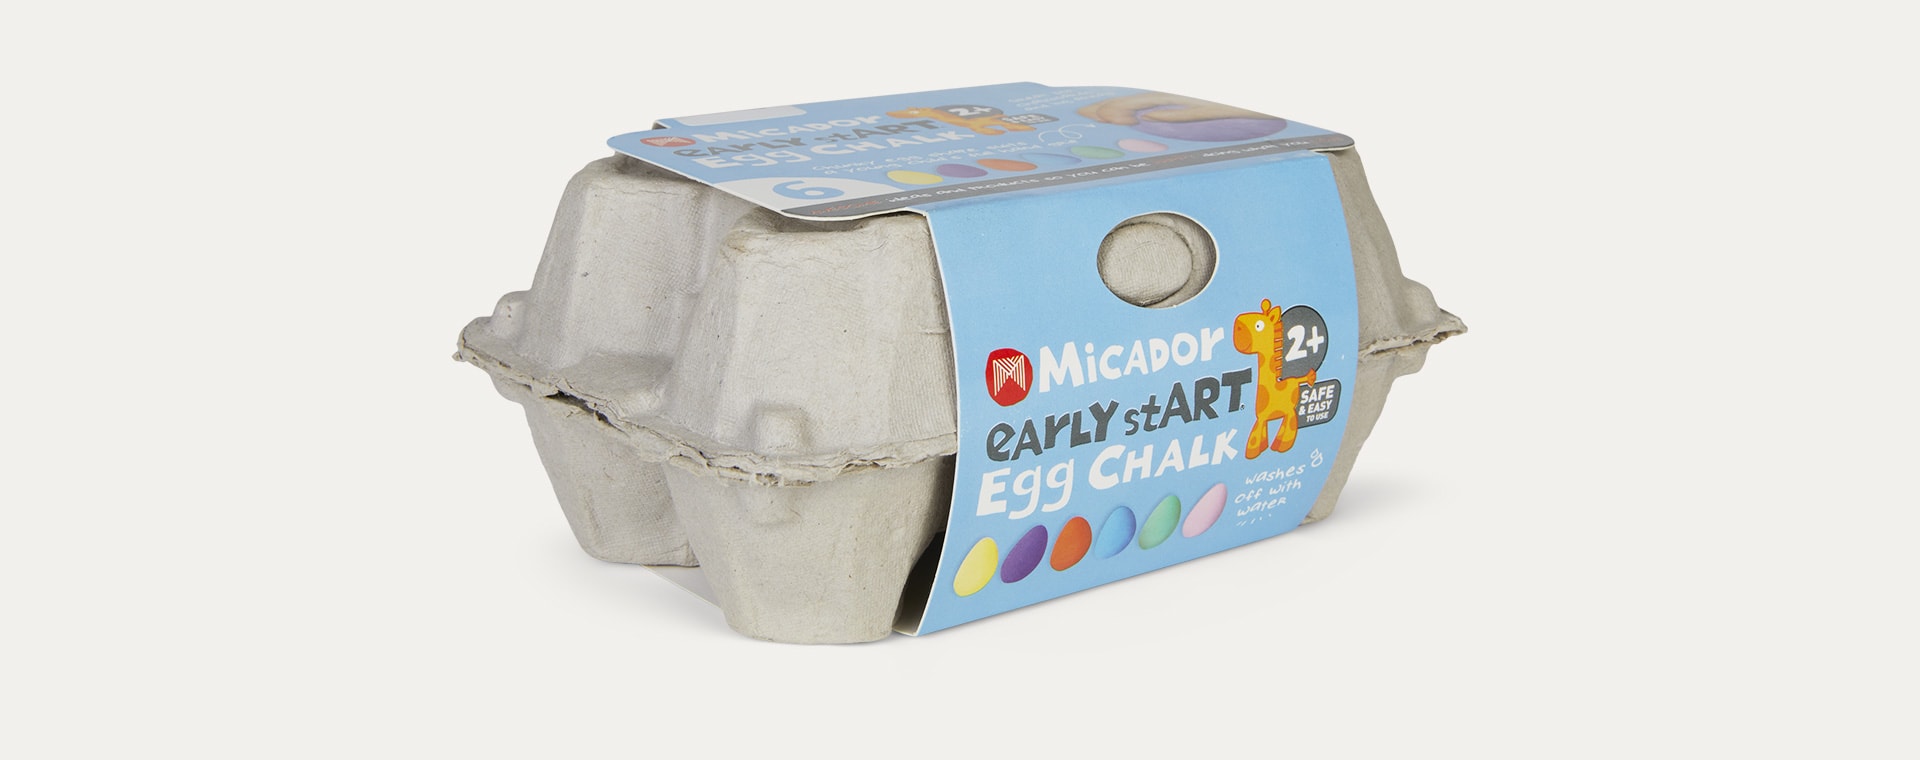 Multi Micador Early stART Egg Chalk 6 Pack